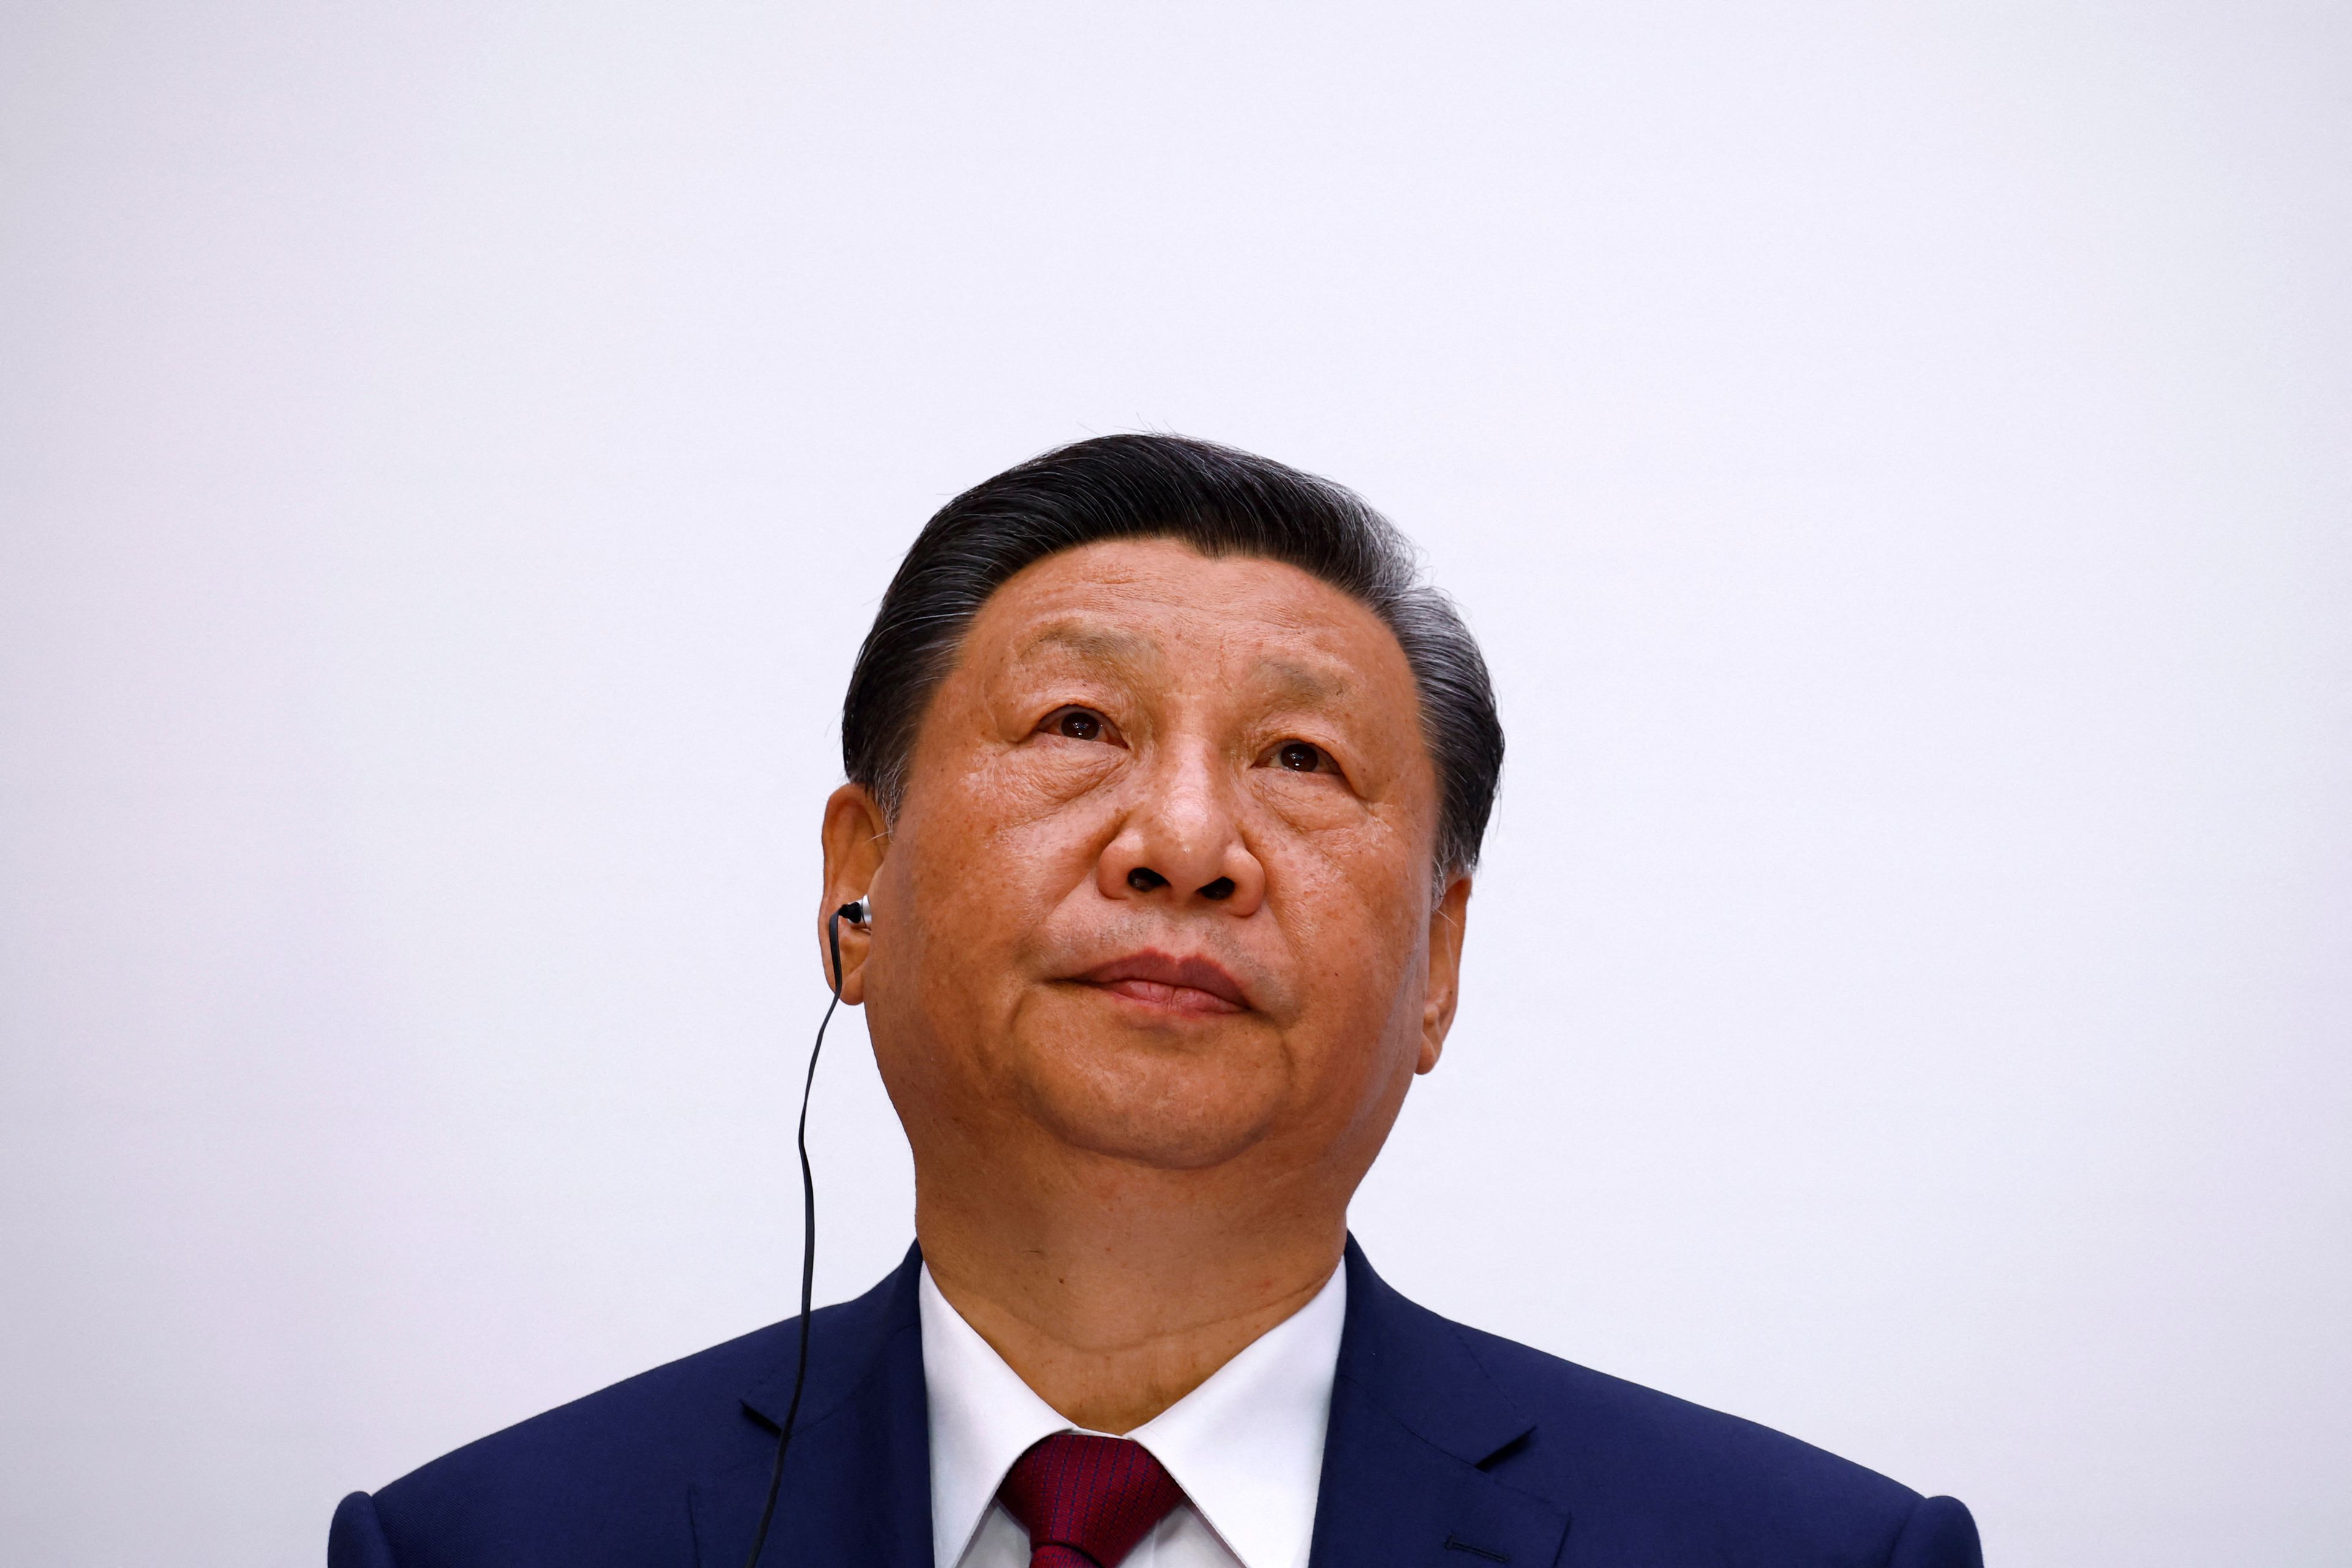 Xi Jinping, en su encuentro en Francia con Emmanuel Macron.